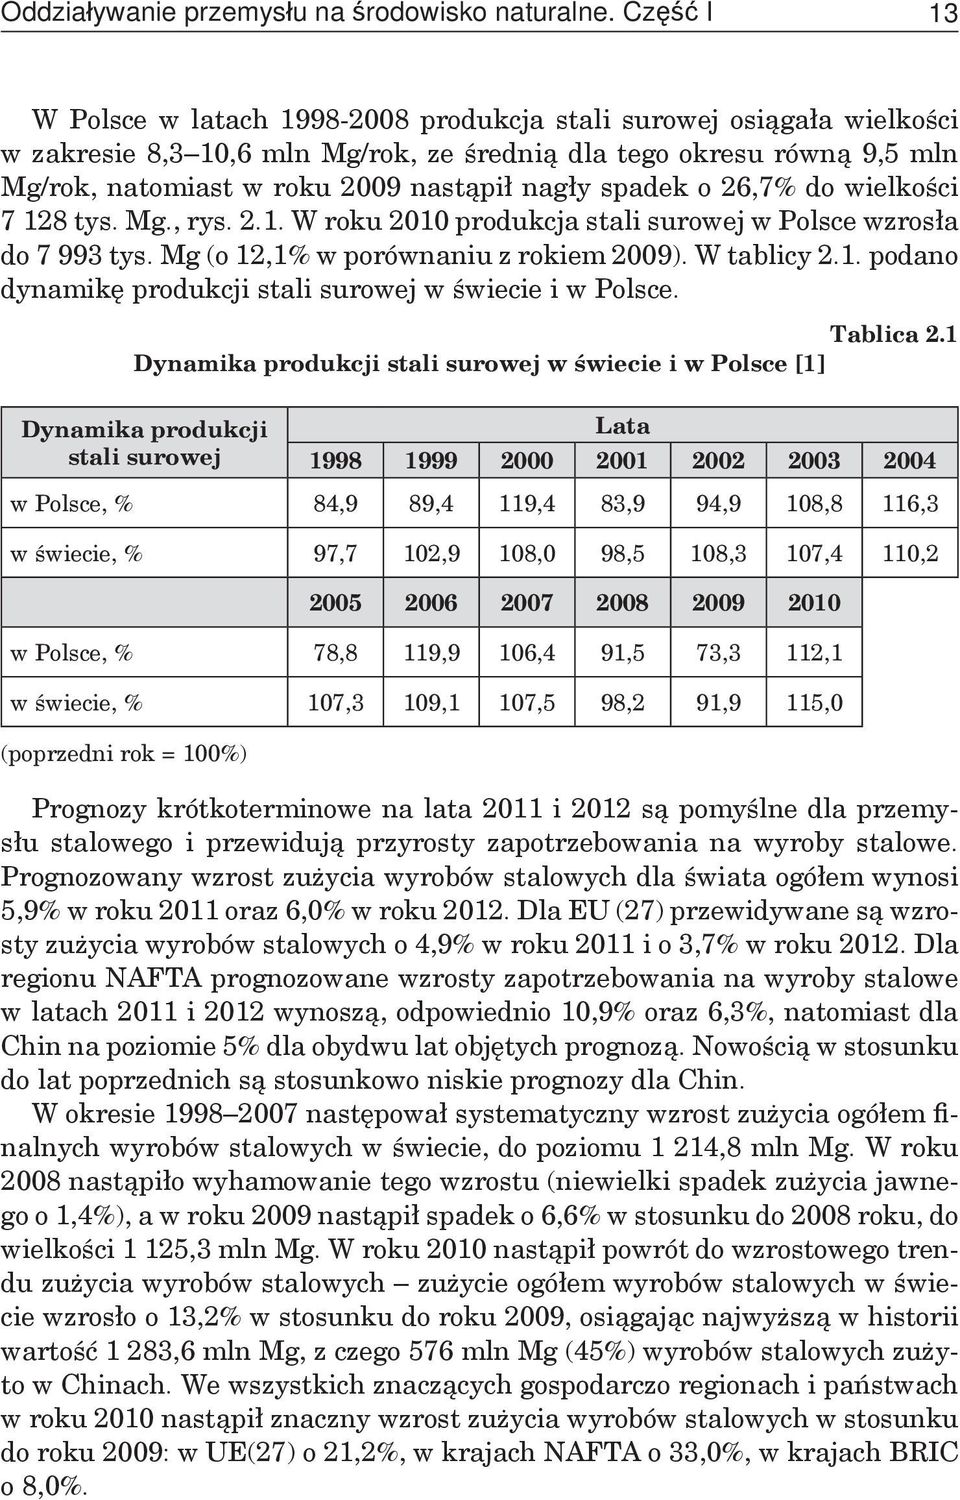 spadek o 26,7% do wielkości 7 128 tys. Mg., rys. 2.1. W roku 2010 produkcja stali surowej w Polsce wzrosła do 7 993 tys. Mg (o 12,1% w porównaniu z rokiem 2009). W tablicy 2.1. podano dynamikę produkcji stali surowej w świecie i w Polsce.